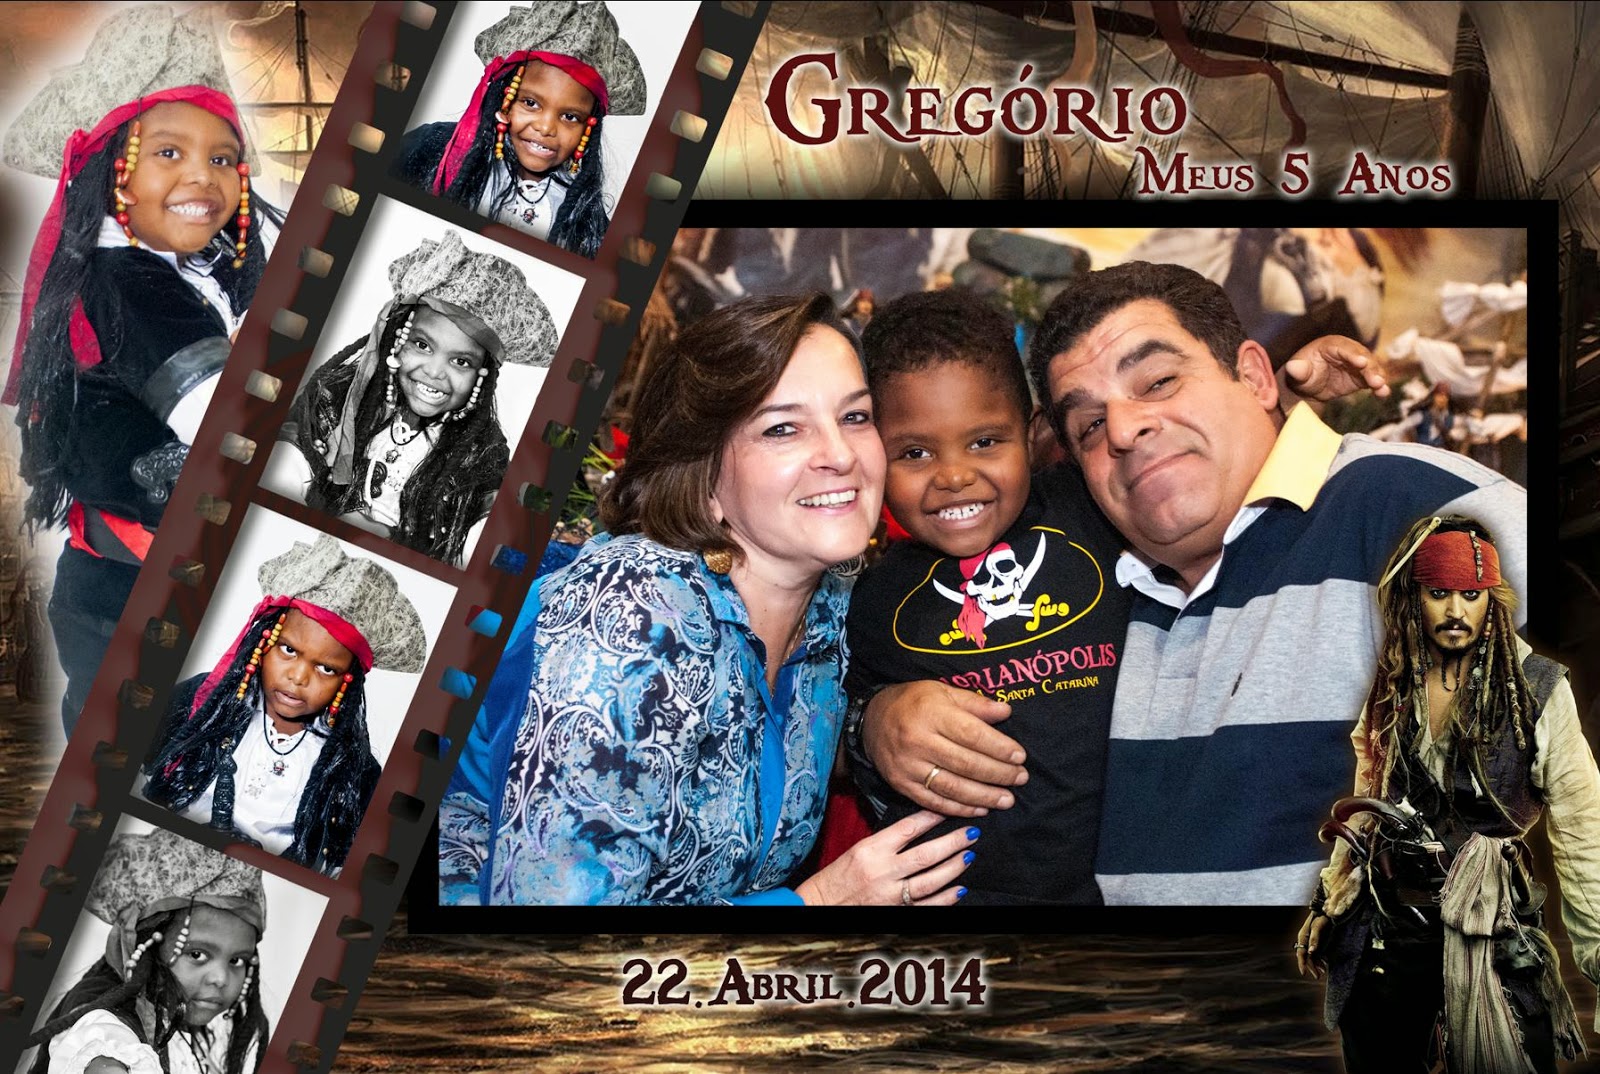 http://fotos-lembranca.blogspot.com.br/2014/04/20140426-gregorio-piratas-do-caribe.html